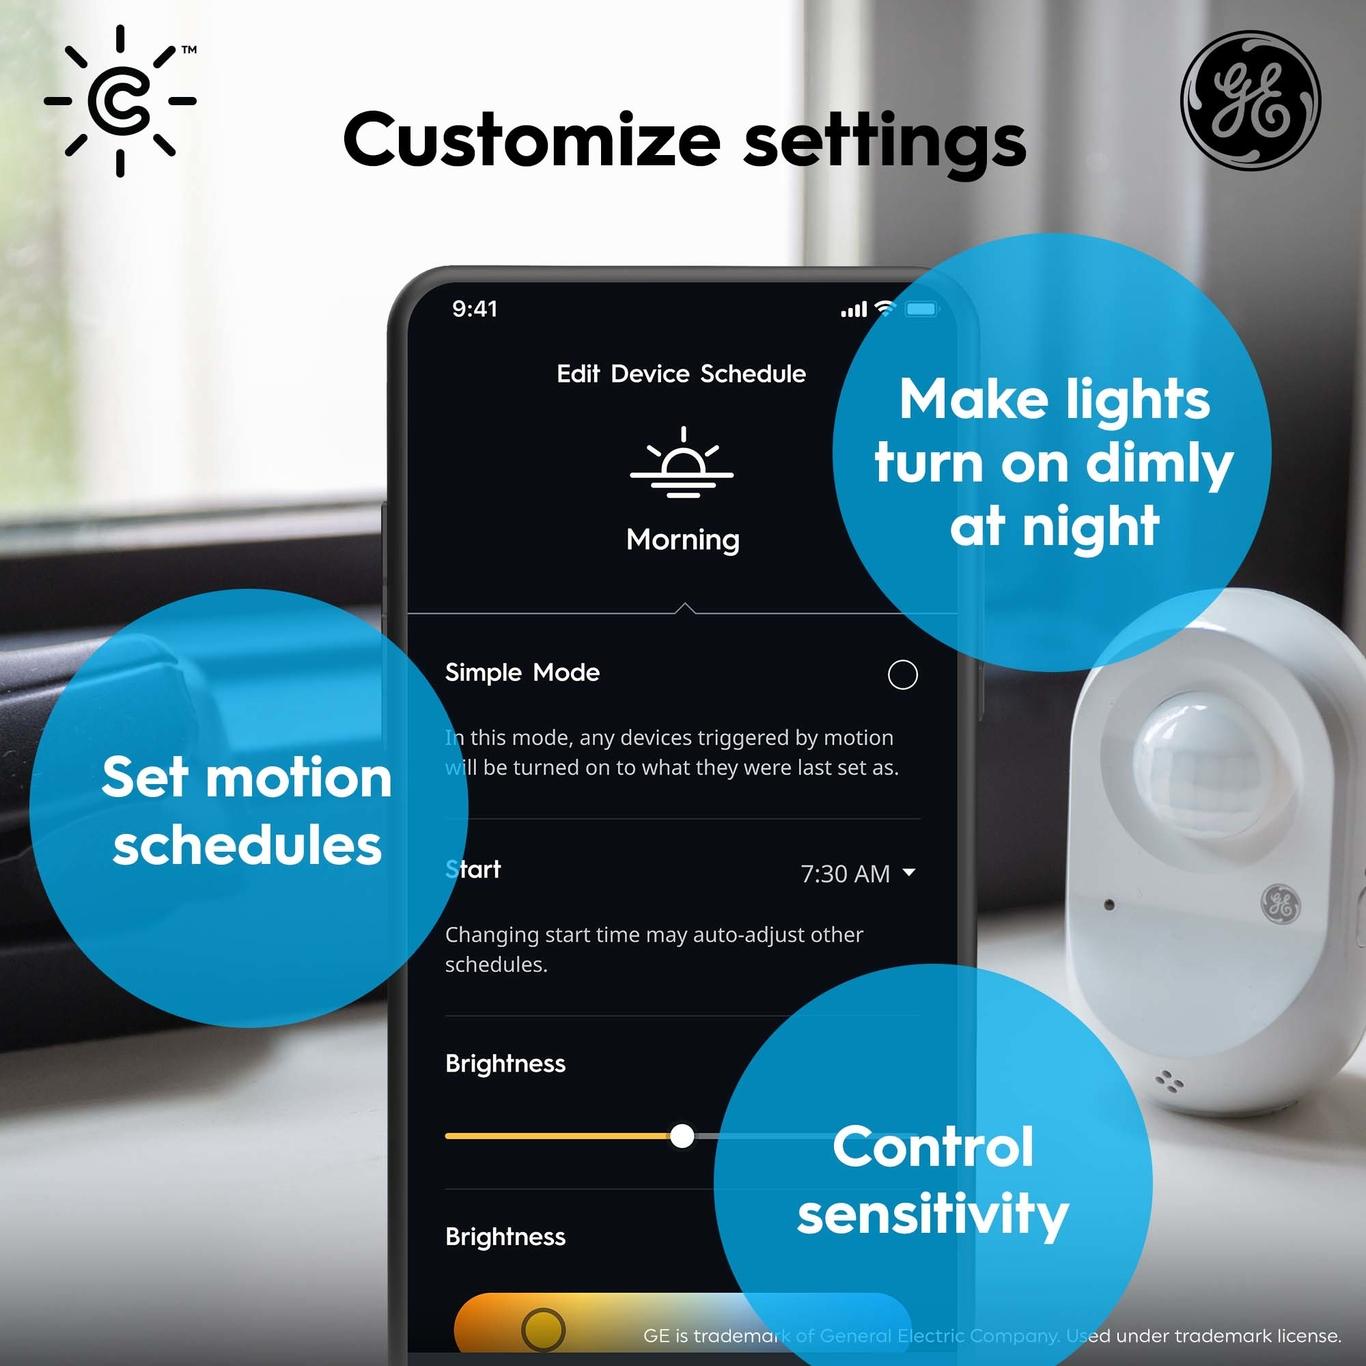 5 Benefits of Having Motion Sensor Lights Installed on Your Home - Blog